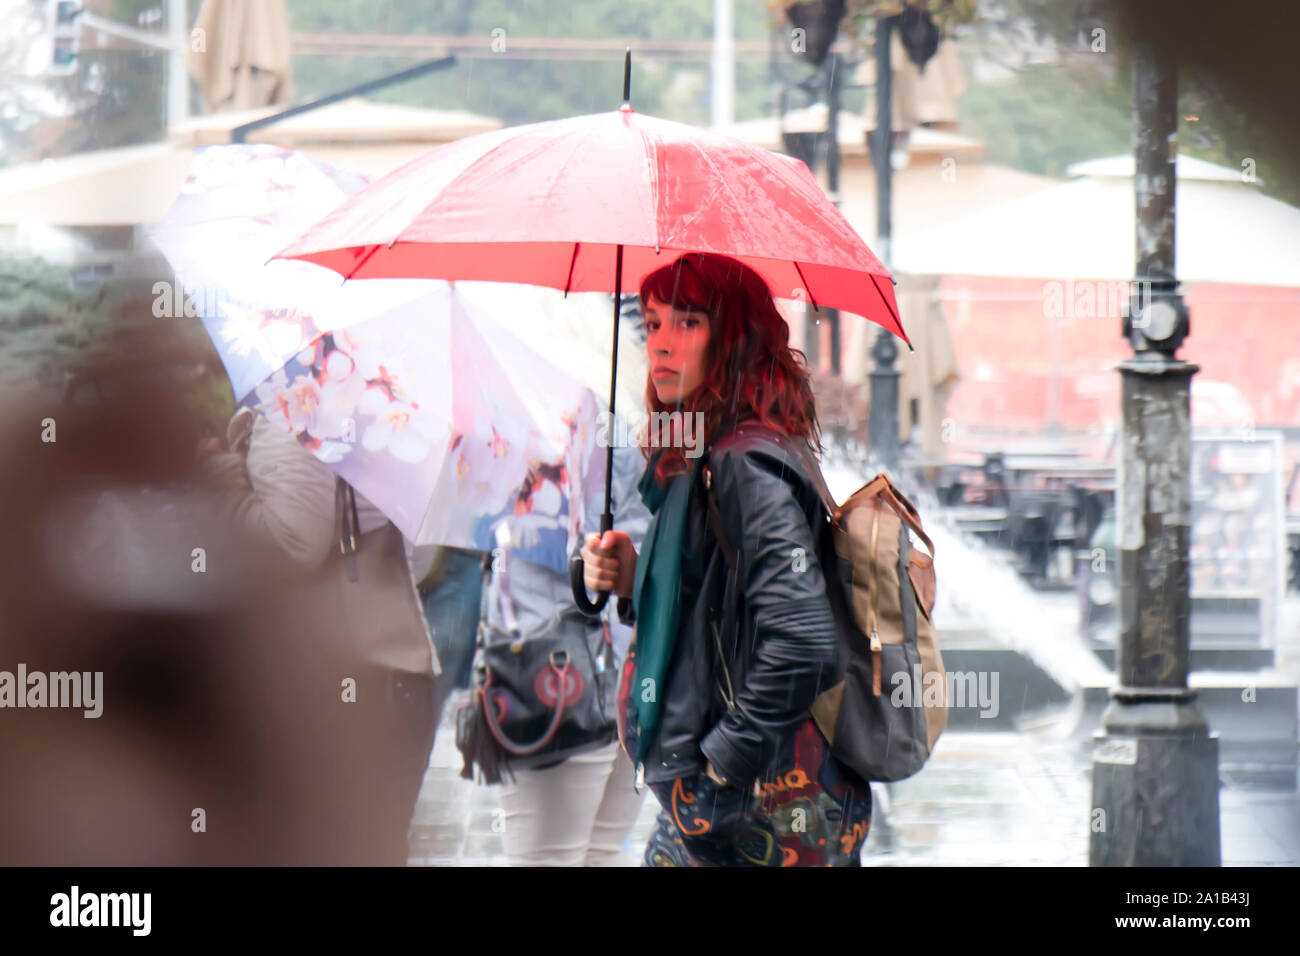 Belgrad, Serbien - September 24, 2018: Blurry junge Frau zu Fuß unter der rote Regenschirm an regnerischen und Masse Ort Straße Stockfoto